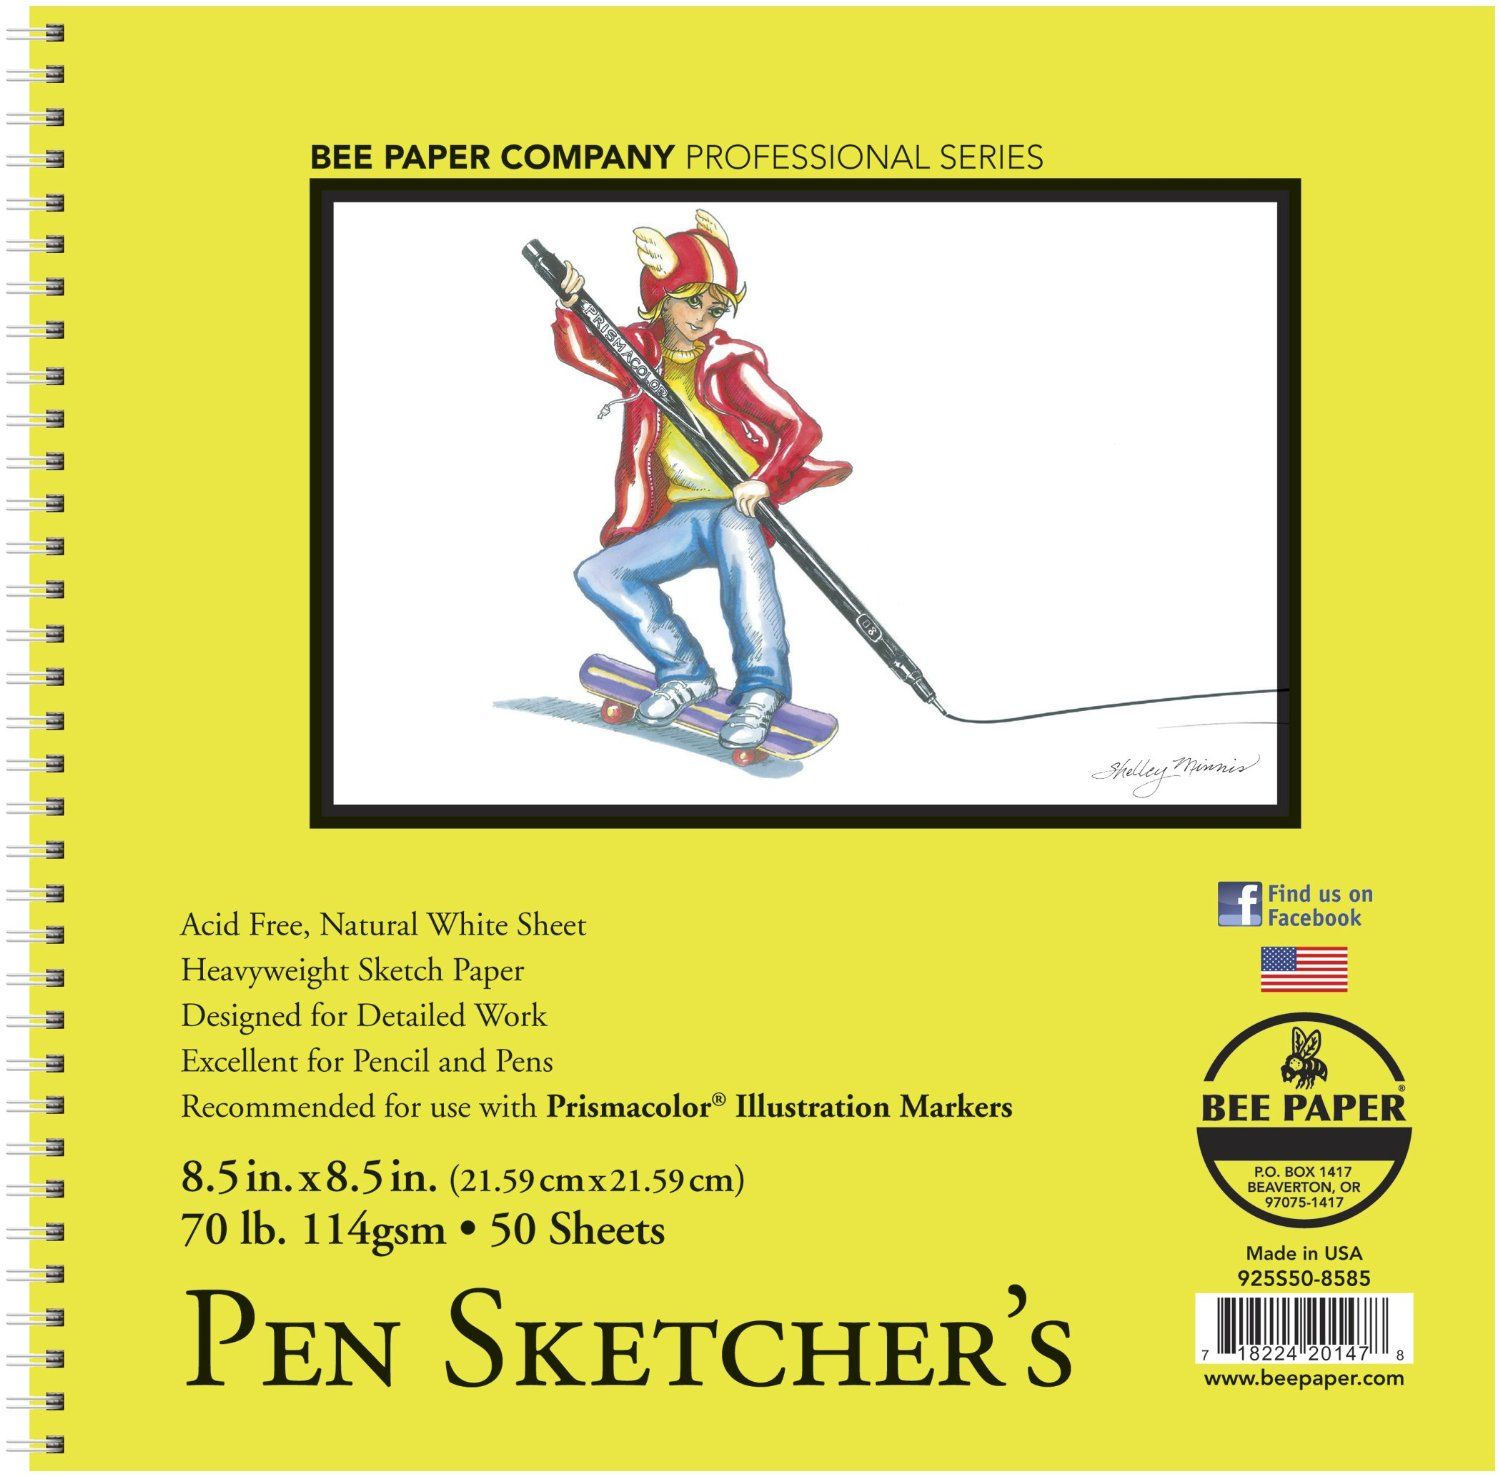 Bee Paper Pen Sketcher's 50 Sheets, 70 lb Pad 8.5 x 8.5 inch